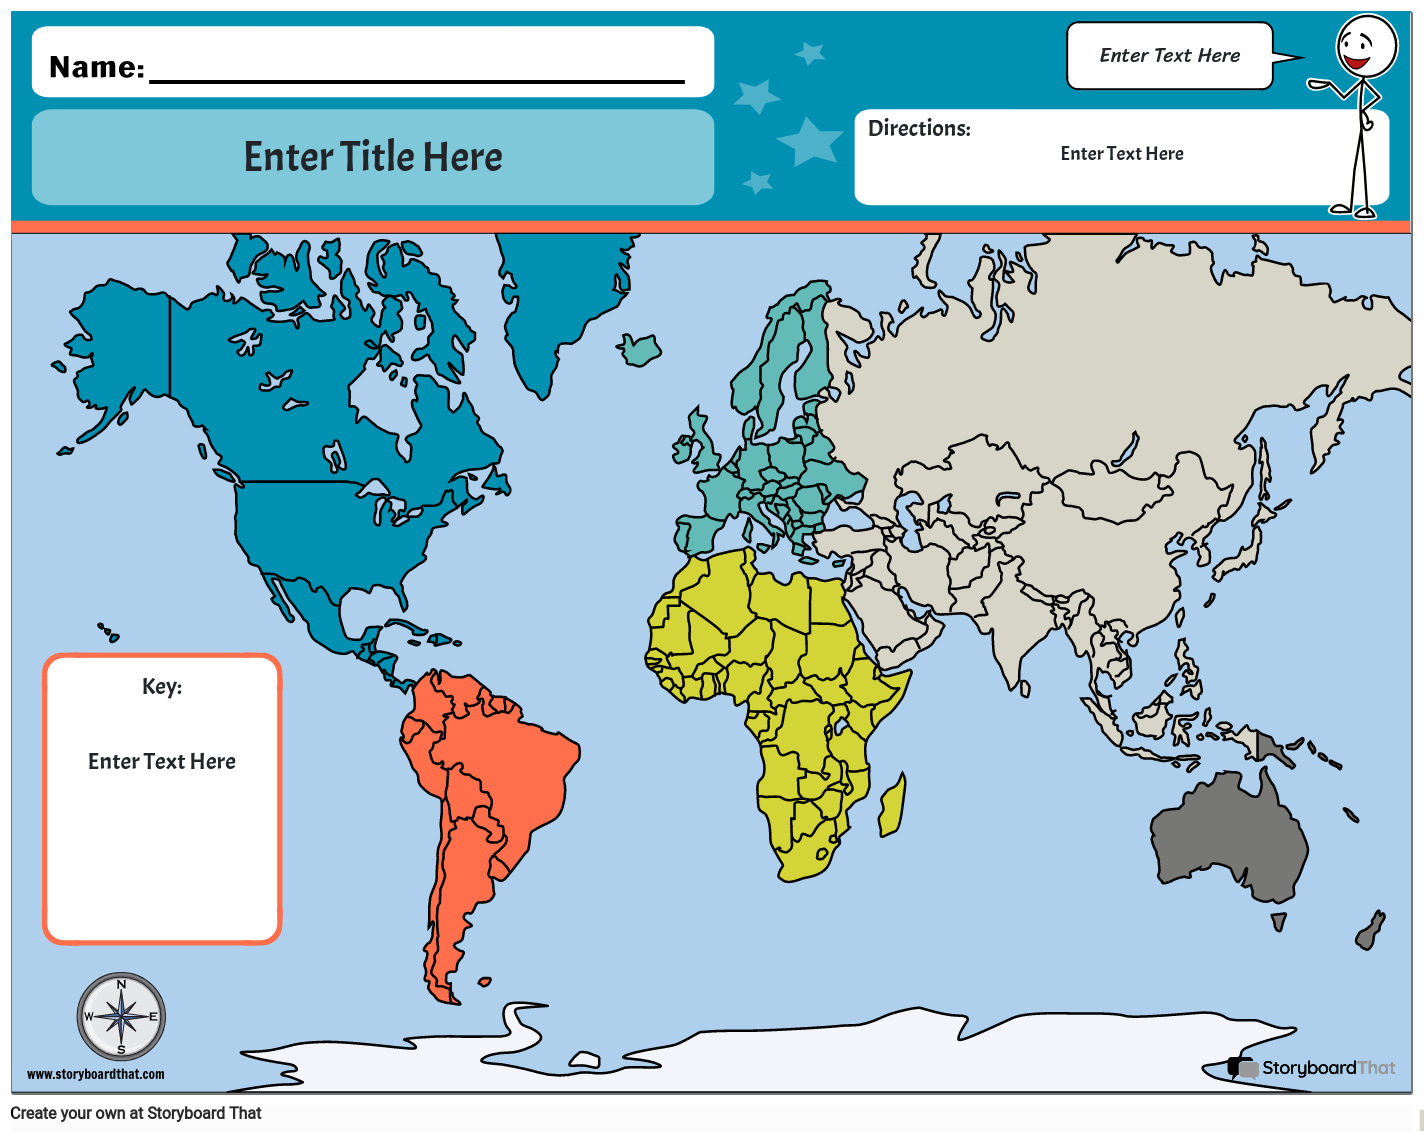 Dünya Haritası Çalışma Sayfası